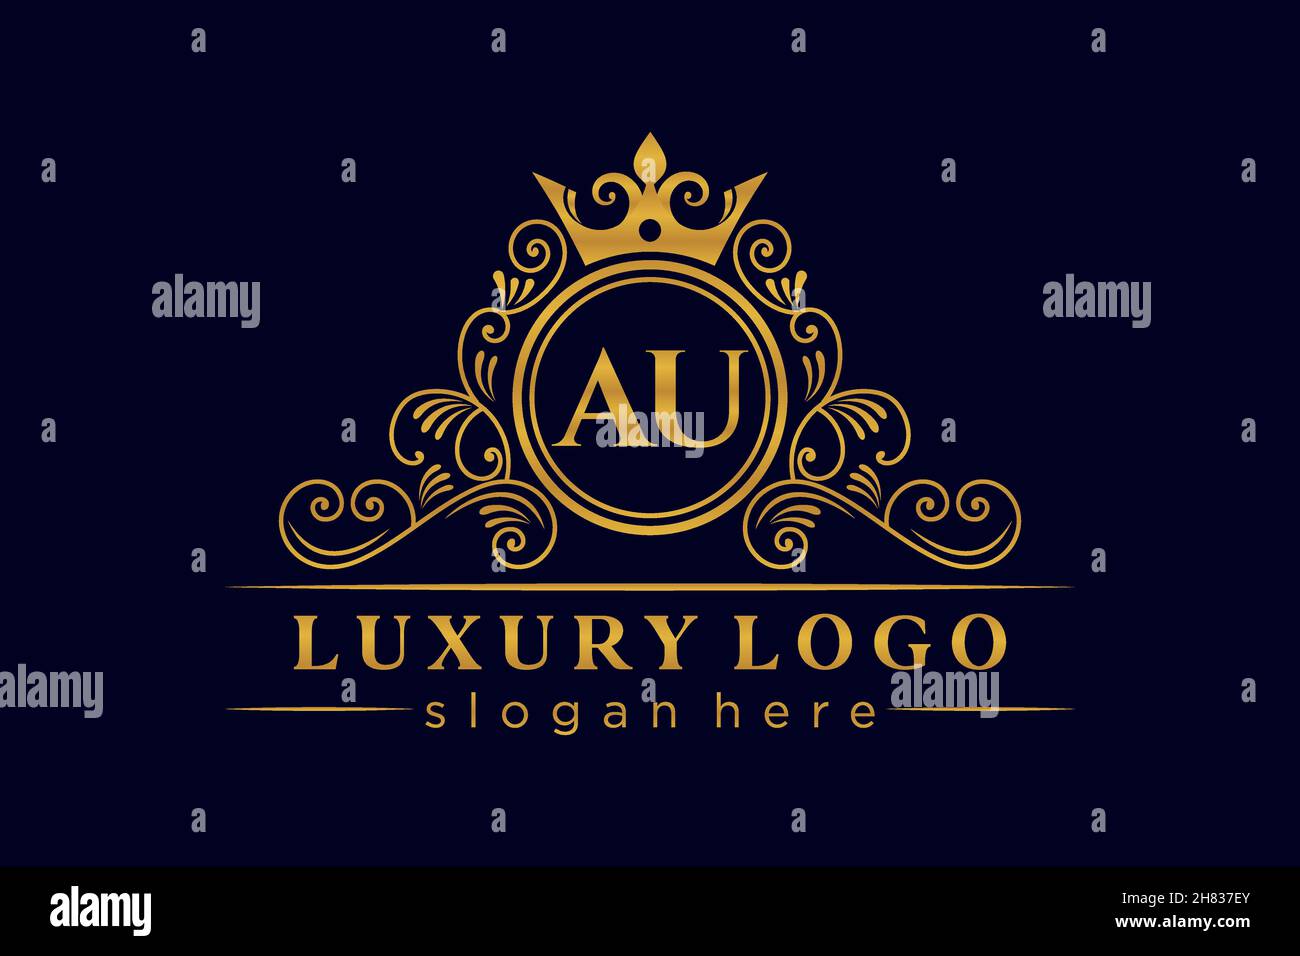 AU Initial Letter Gold calligraphic feminine floral hand drawn heraldic monogram antique vintage style luxury logo design Premium Stock Vector